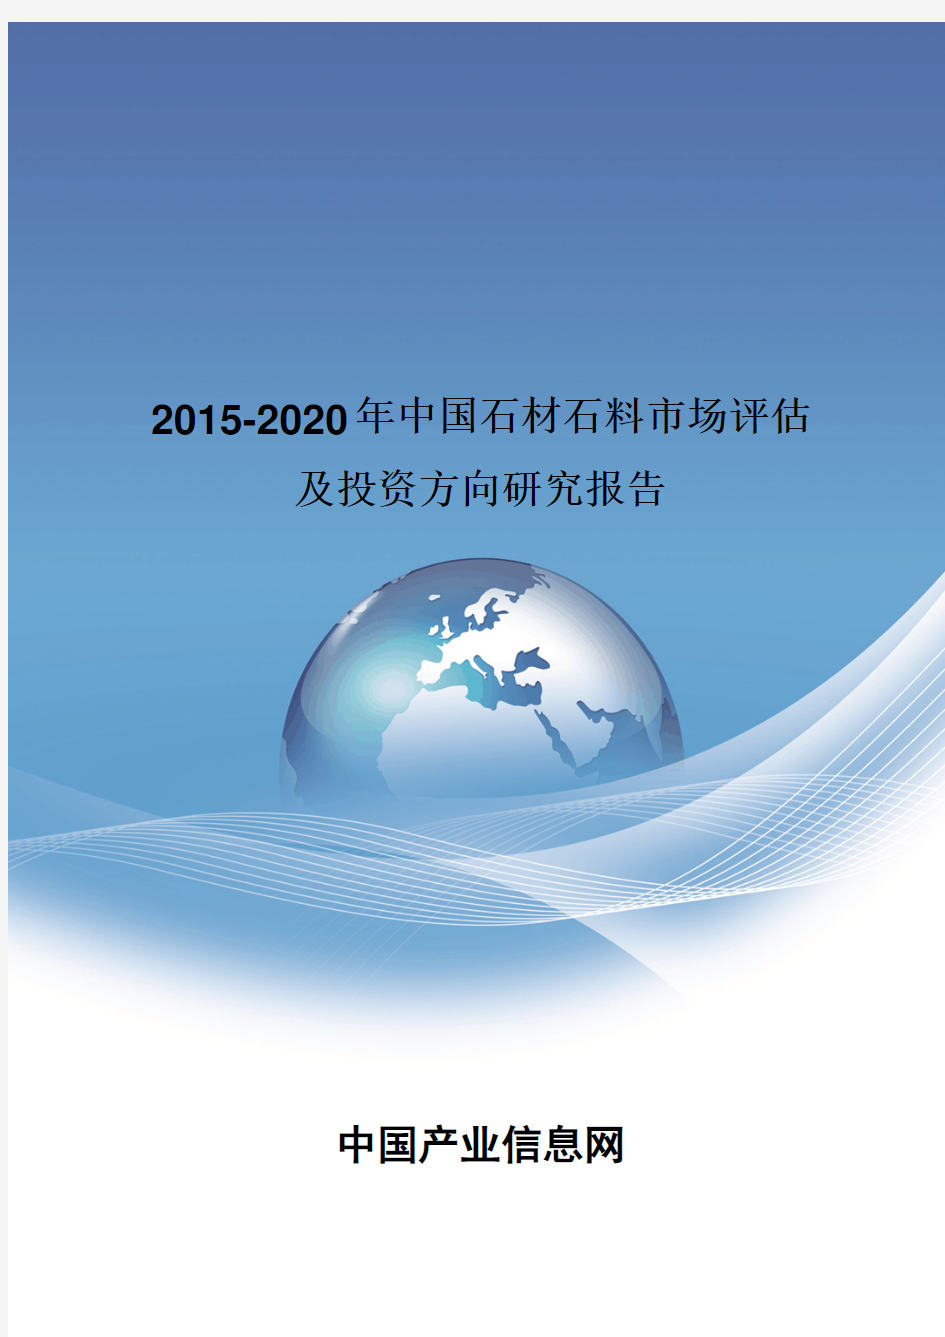 2015-2020年中国石材石料市场评估报告